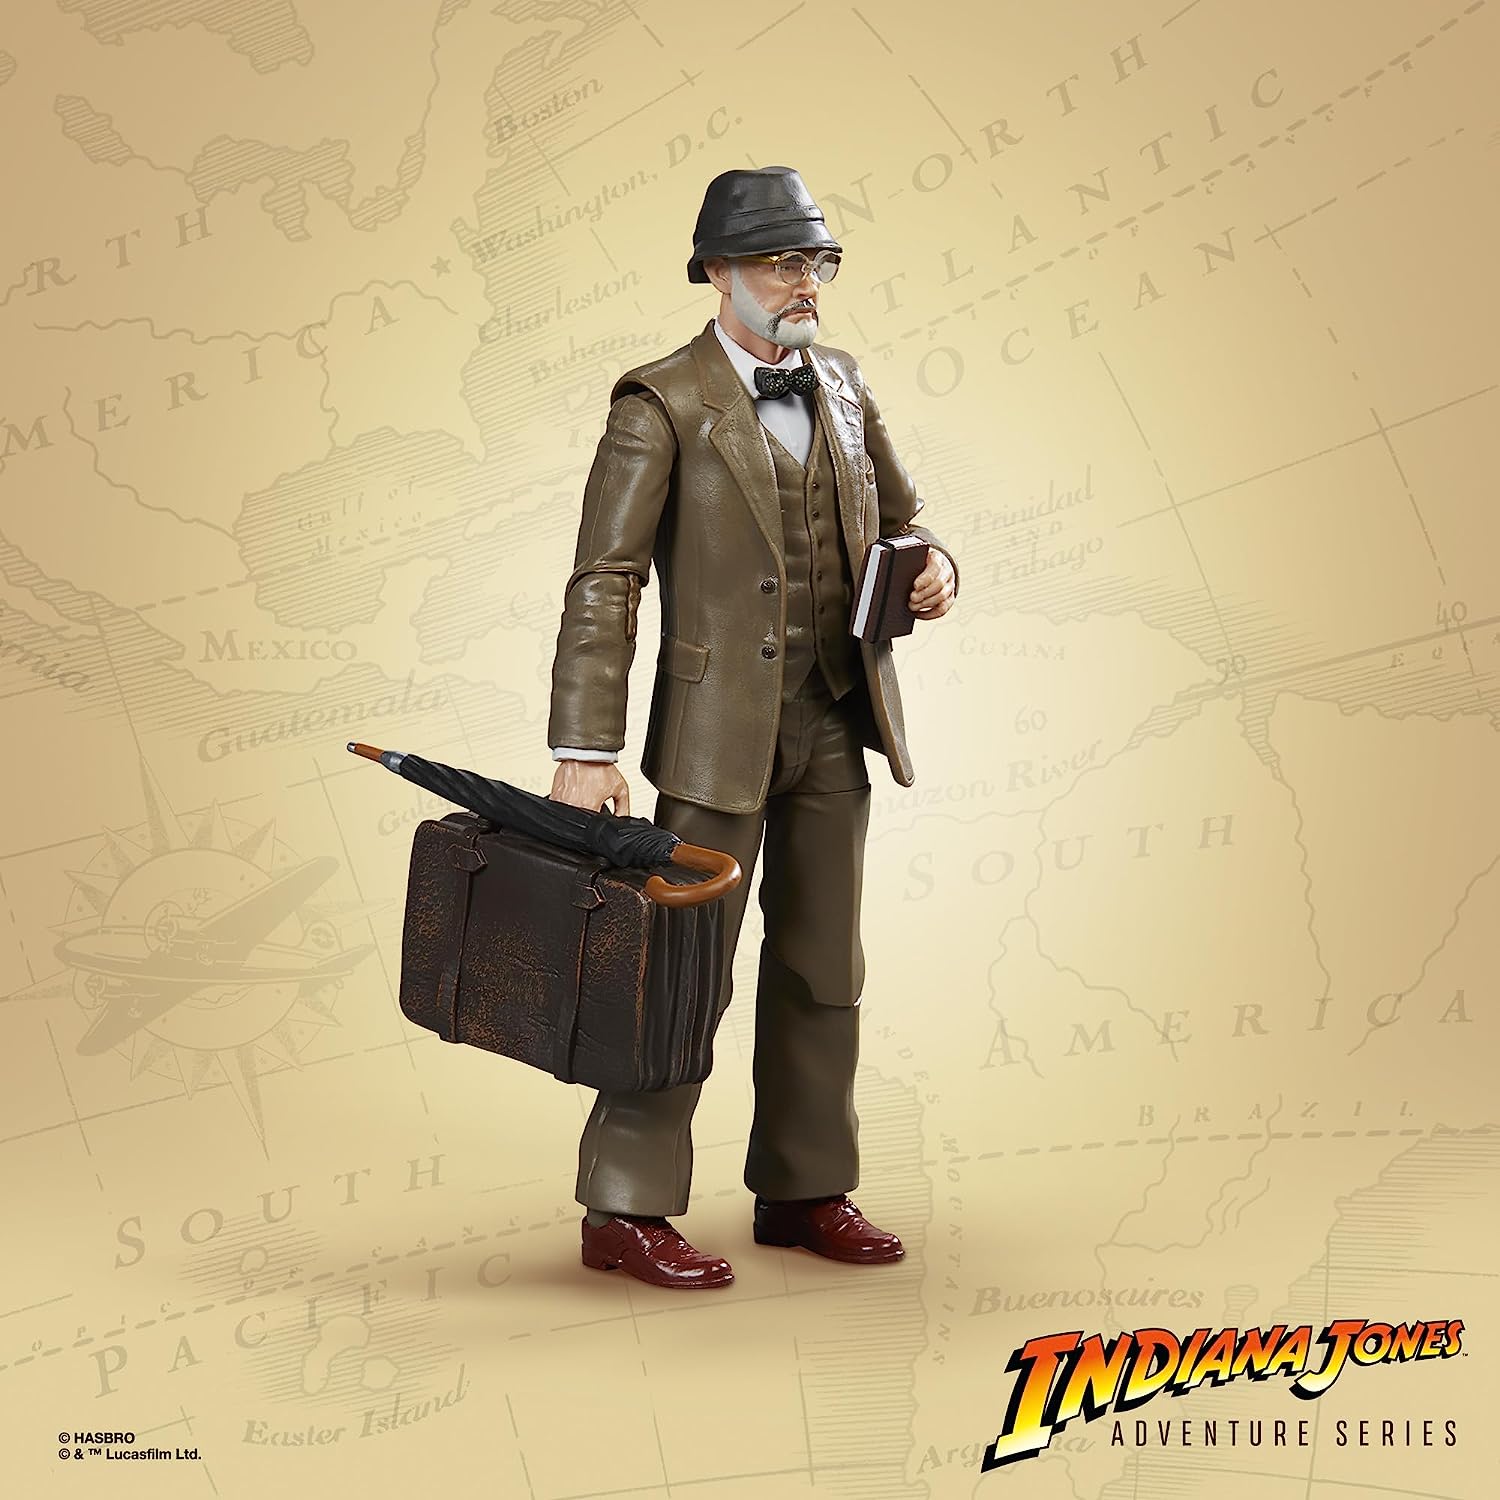 Indiana Jones Adventure Series Henry Jones (The Last Crusade) 6-Inch Action Figure 画像